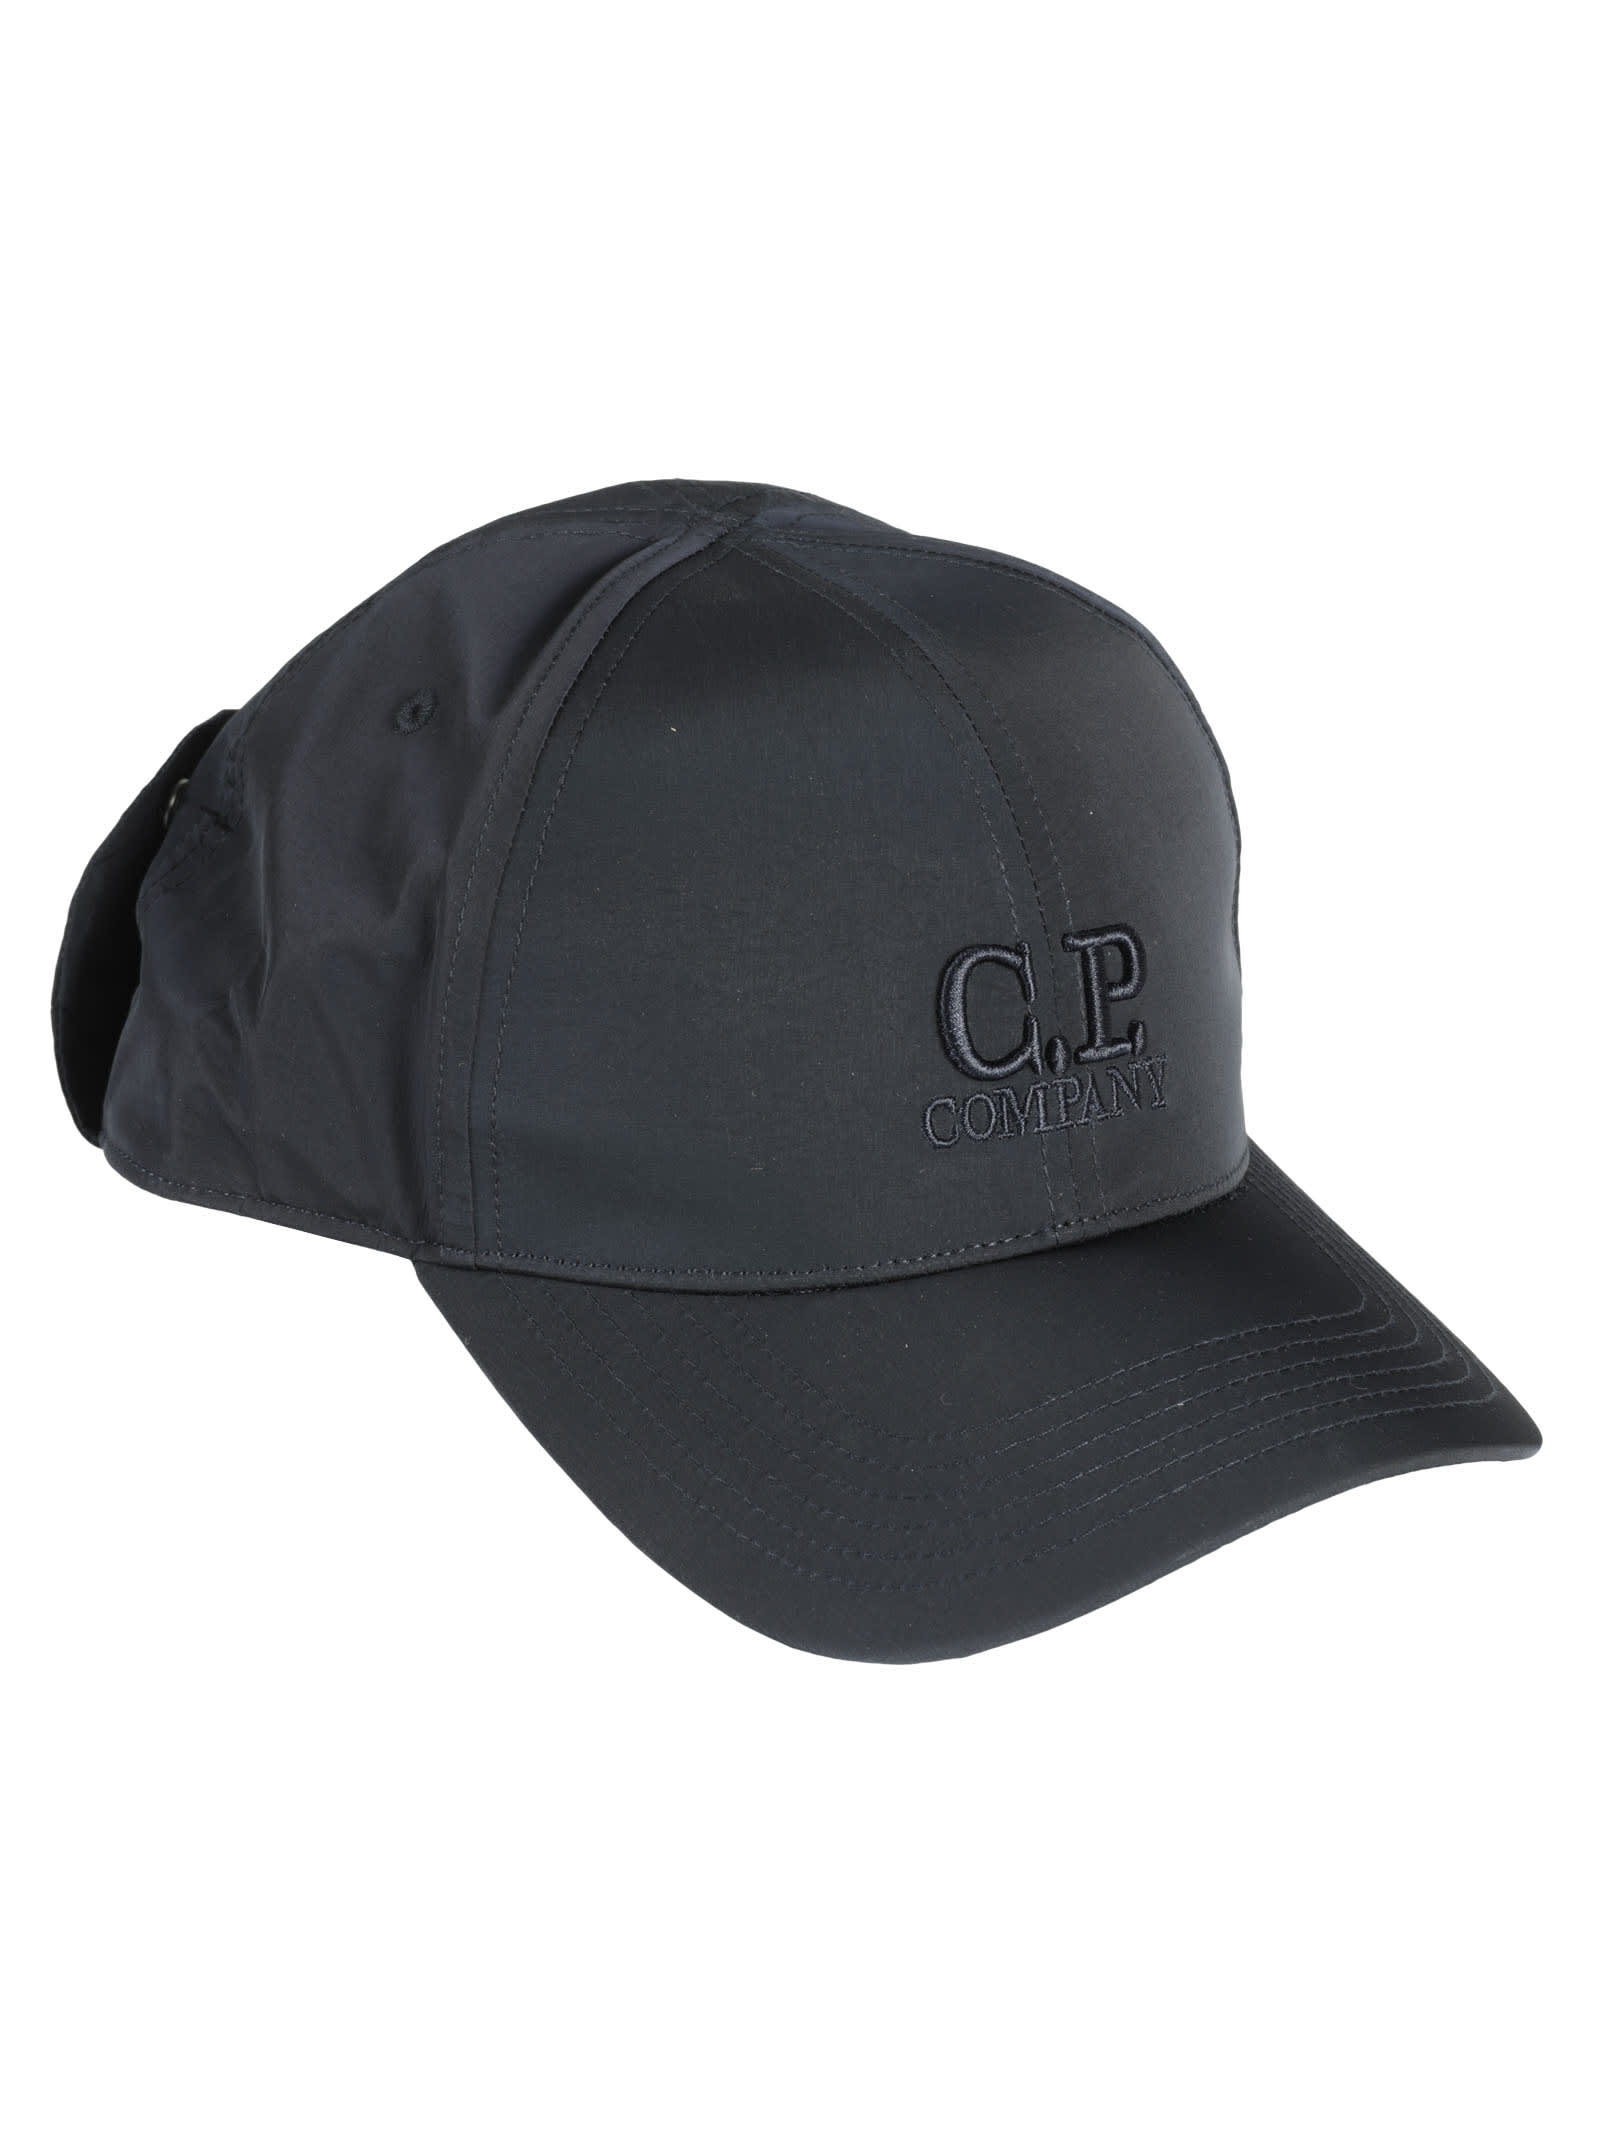 C.P. Company Chrome-r Baseball Cap | Smart Closet